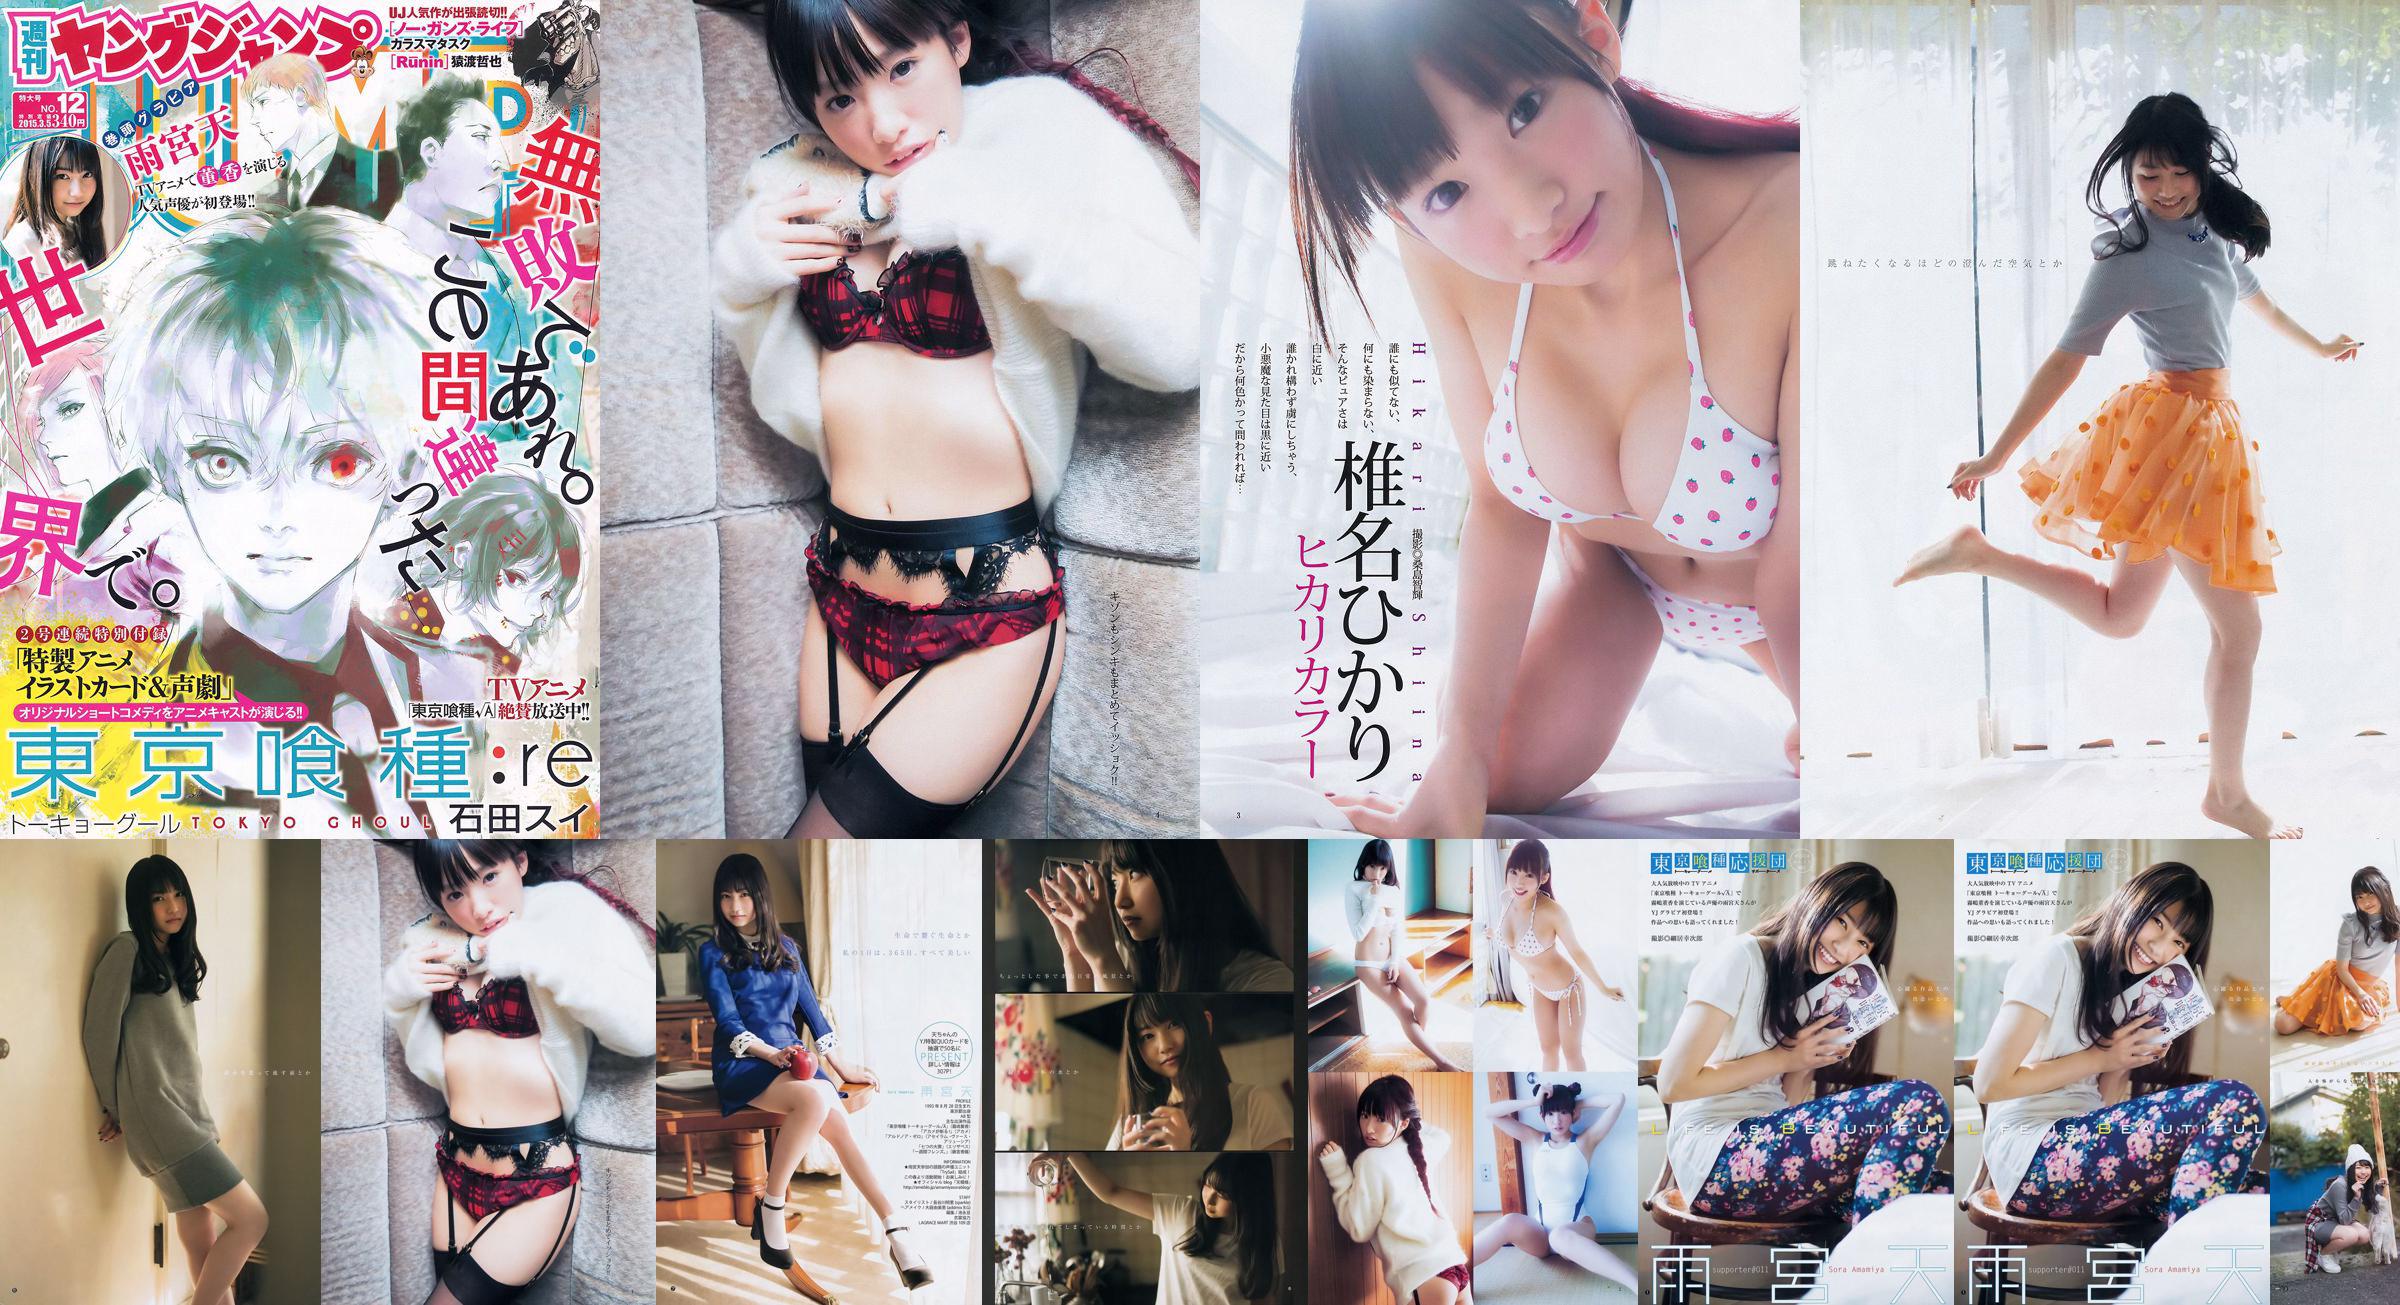 雨宮天 椎名ひかり [Weekly Young Jump] 2015年No.12 写真杂志 No.bb62e9 第3頁